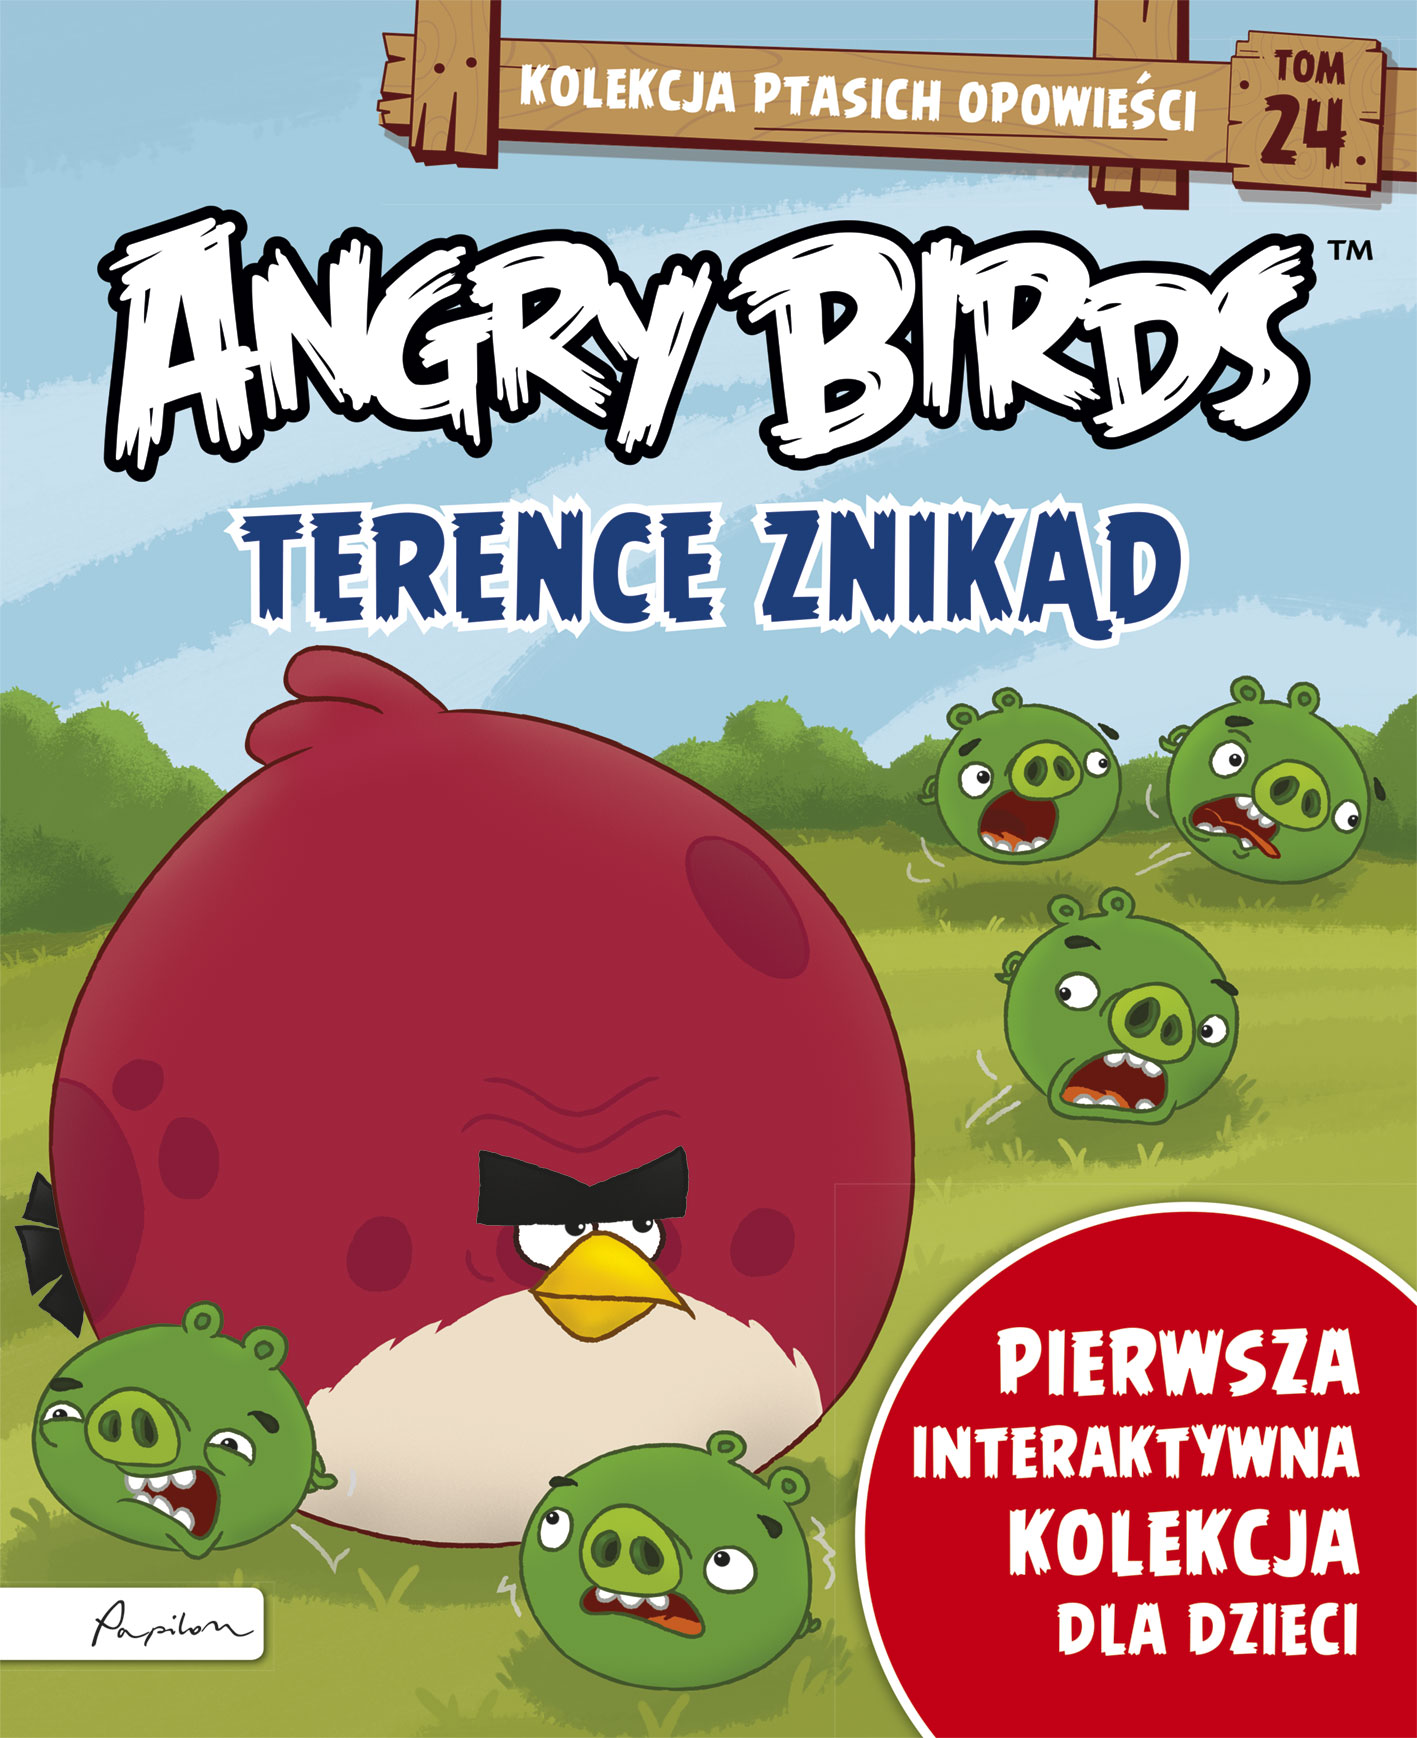 Angry Birds. Kolekcja ptasich opowieści 24. Terence znikąd.